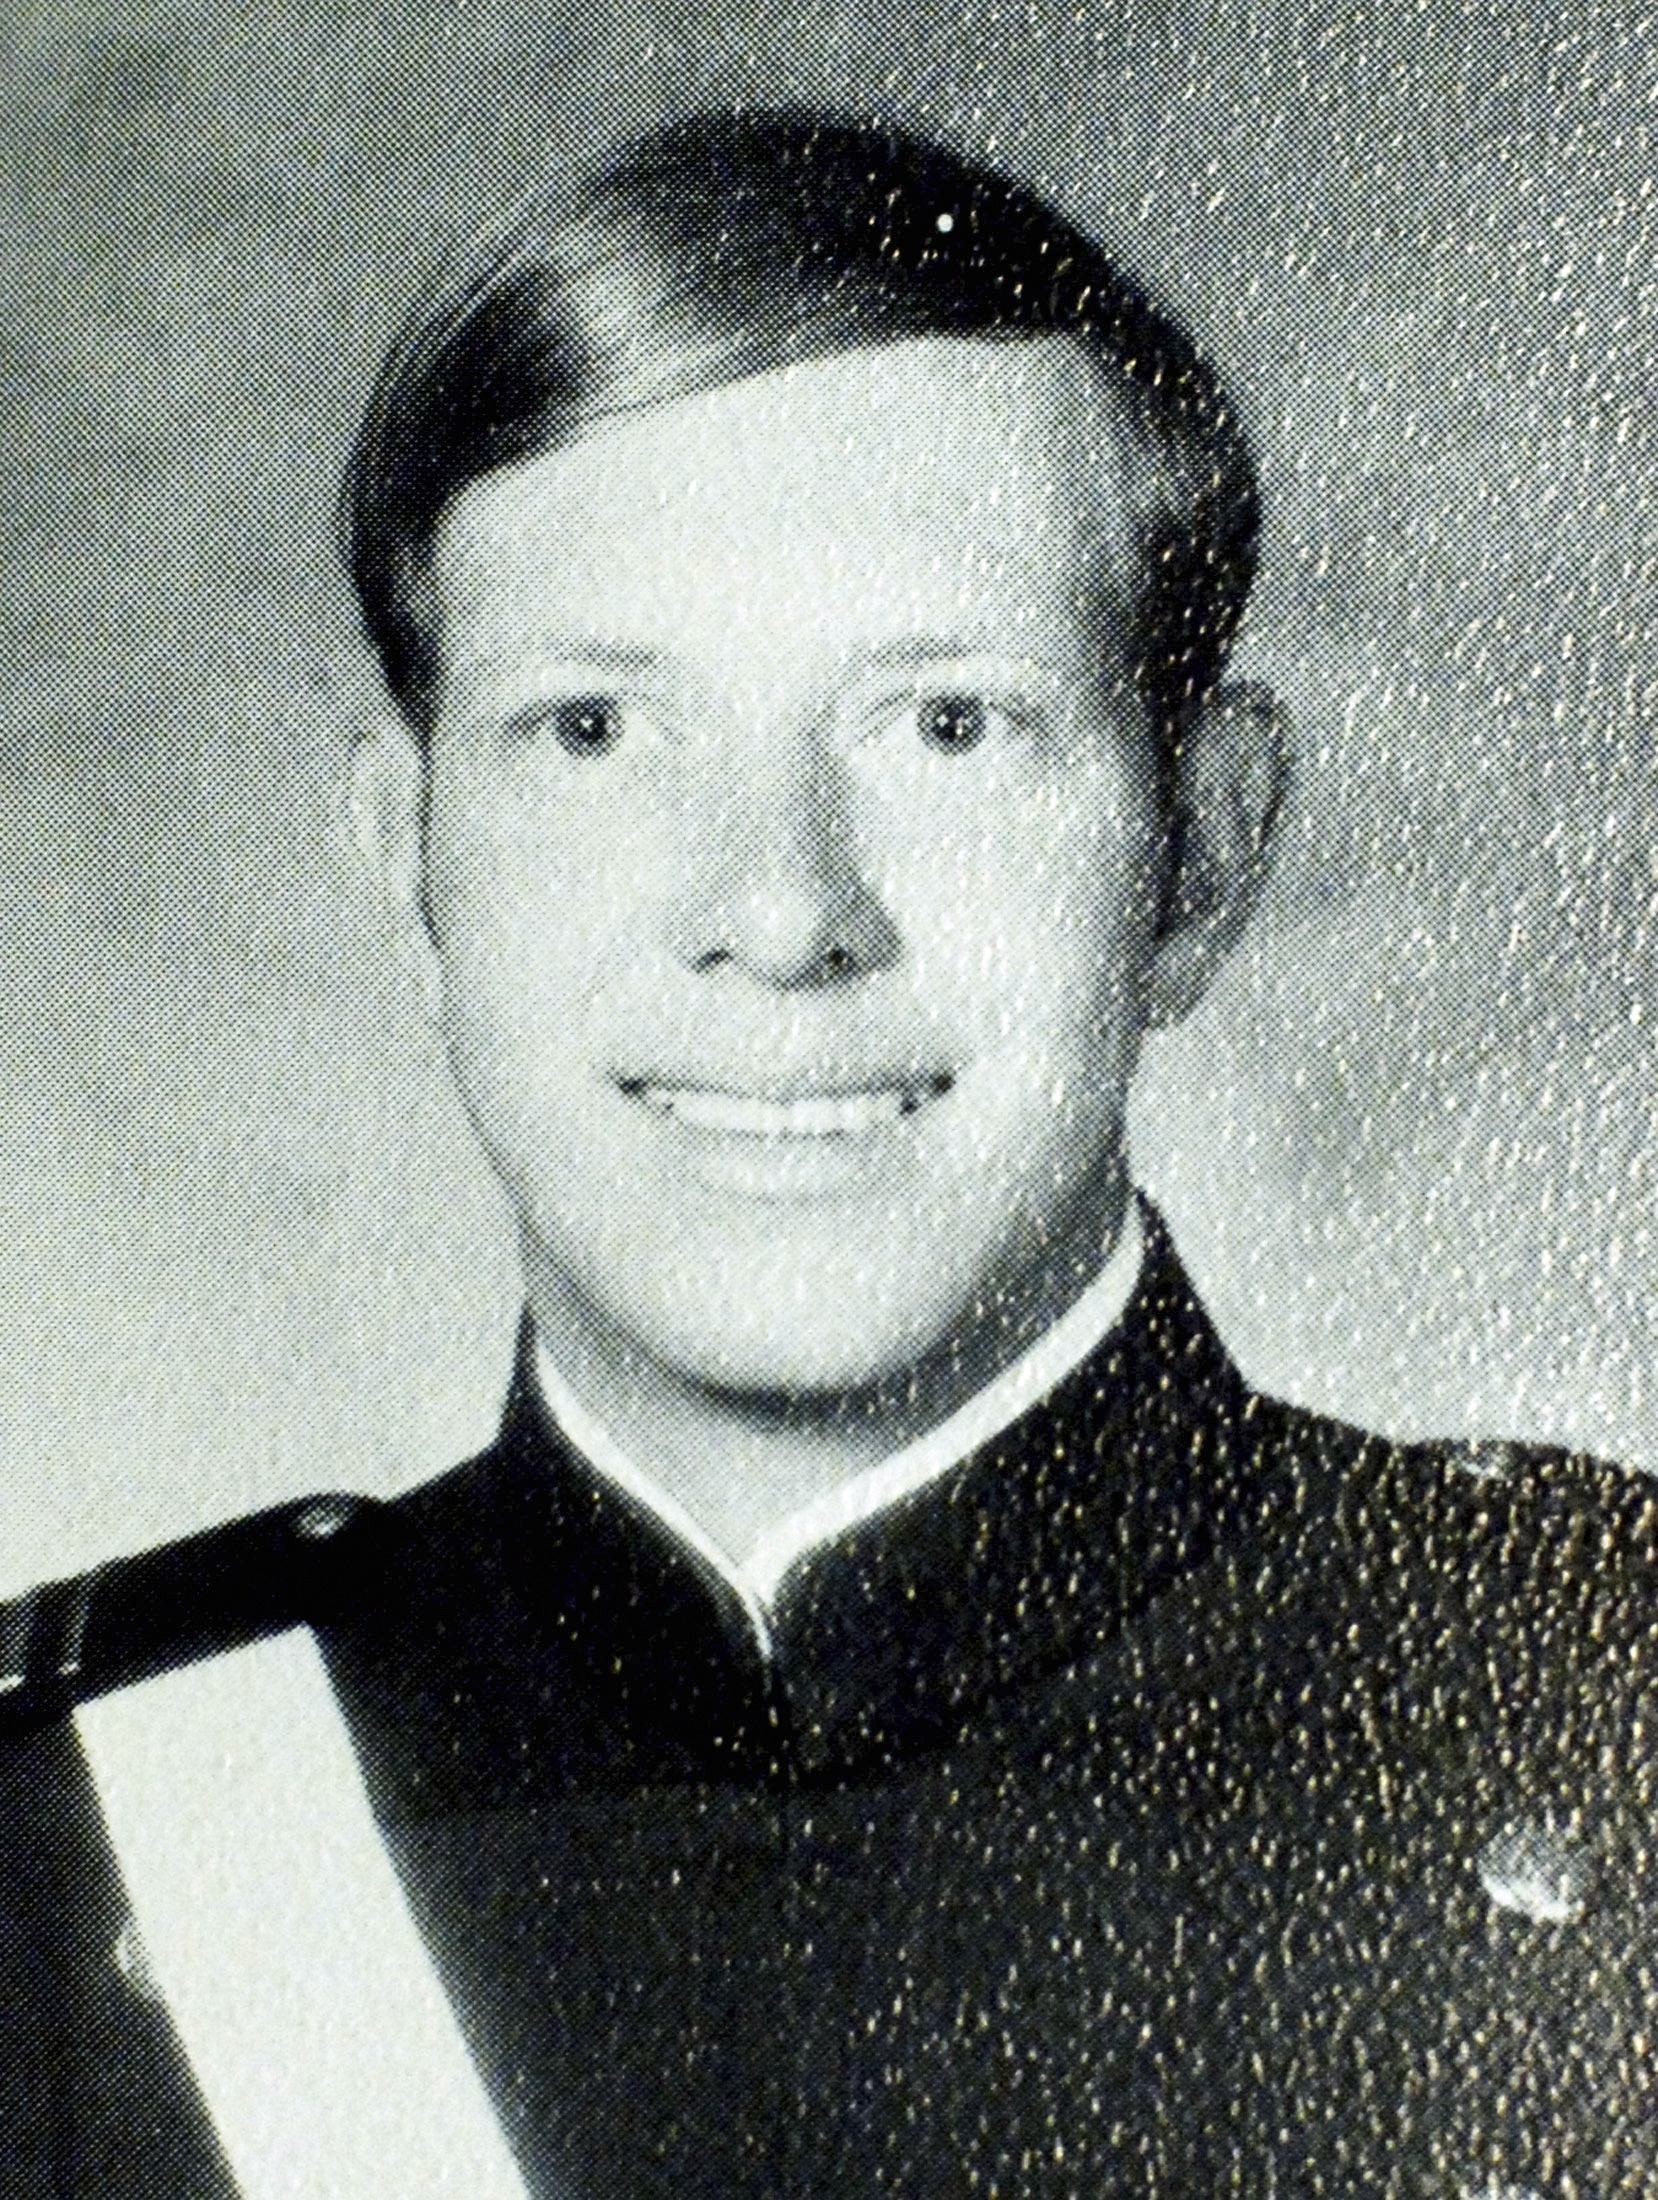 Chesley Sullenberg em foto de 1973, quando estava na Força Aérea